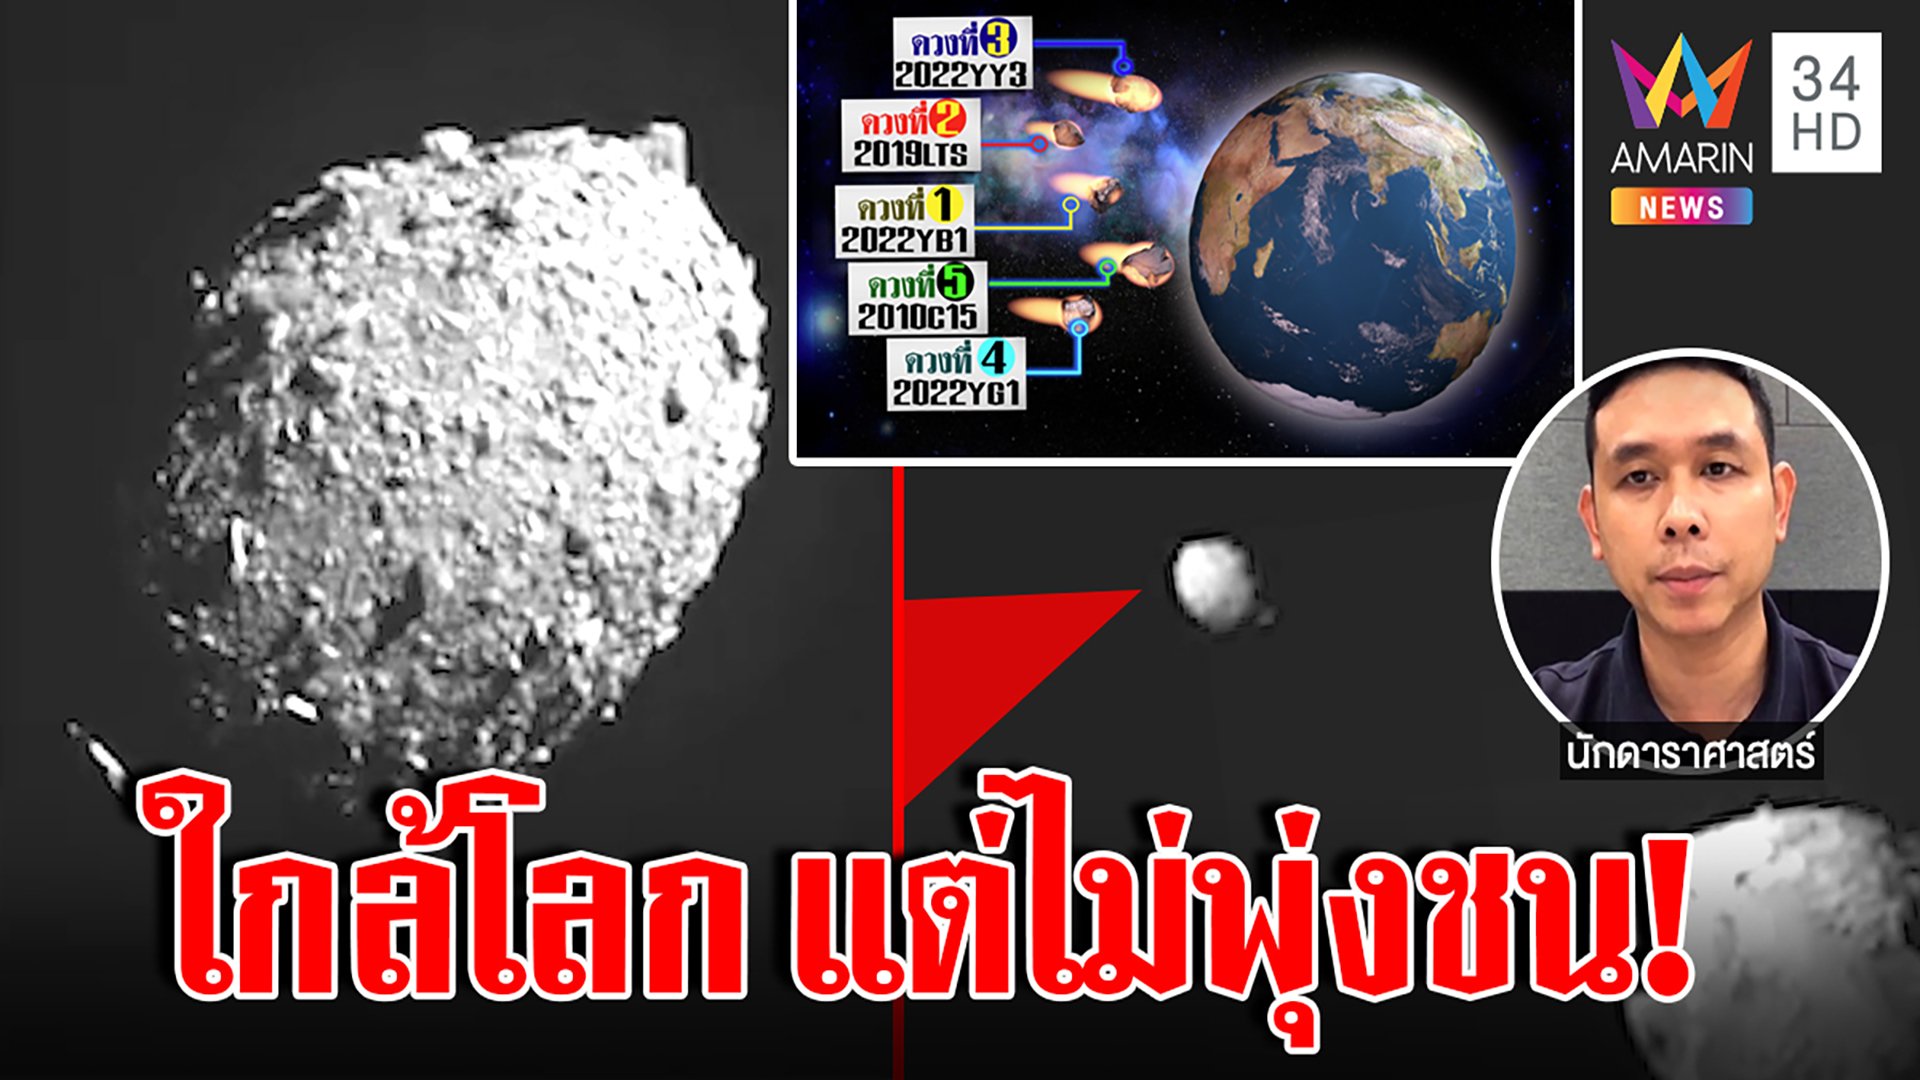 จับตา 5 ดาวเคราะห์น้อยโคจรเฉียดโลก นักดาราศาสตร์แจงยังมีที่ใกล้กว่านี้อีก | ทุบโต๊ะข่าว | 28 ธ.ค. 65 | AMARIN TVHD34